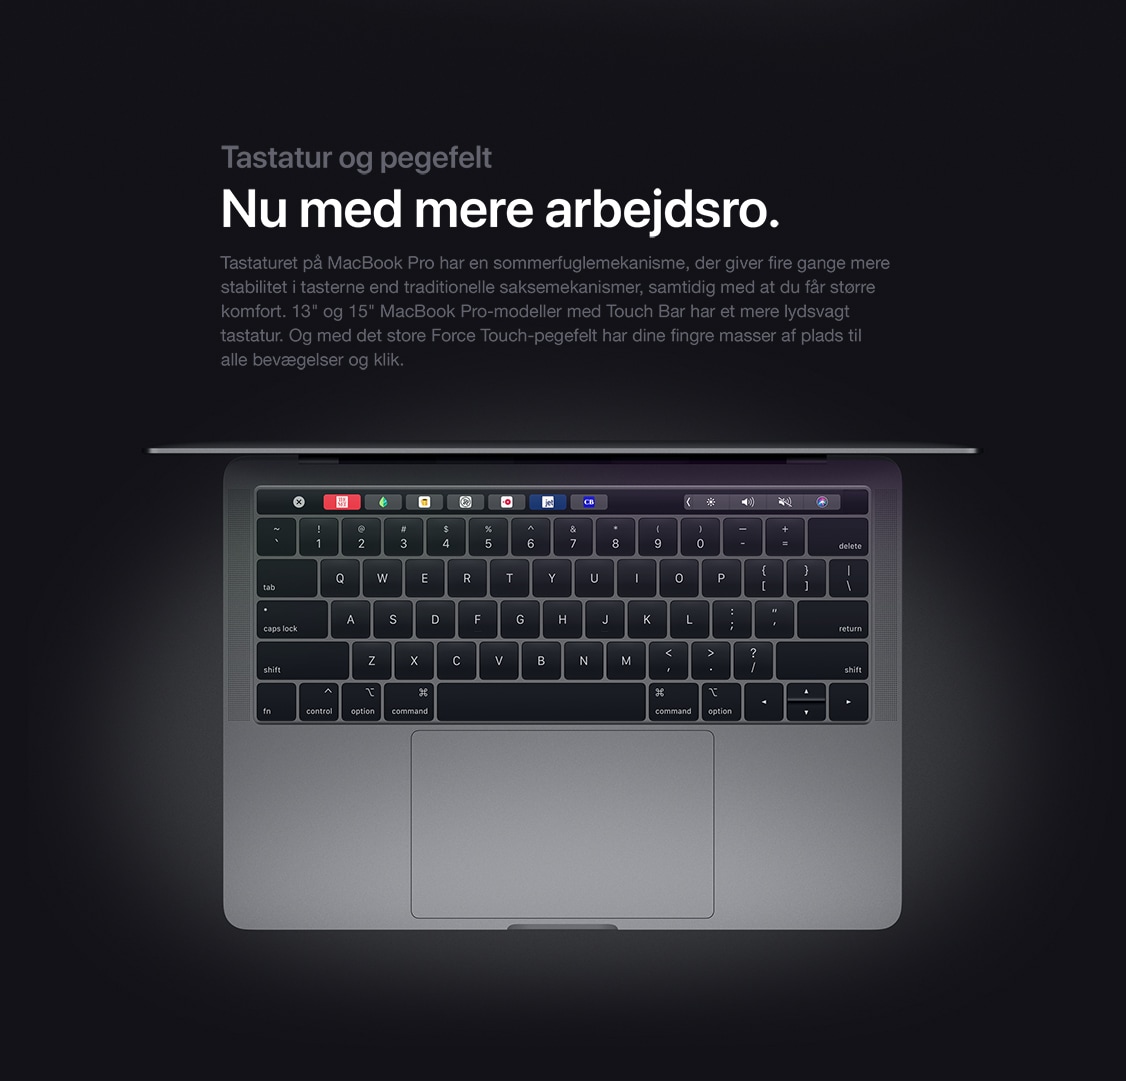 MacBook Pro 2019 er her! - Elgiganten